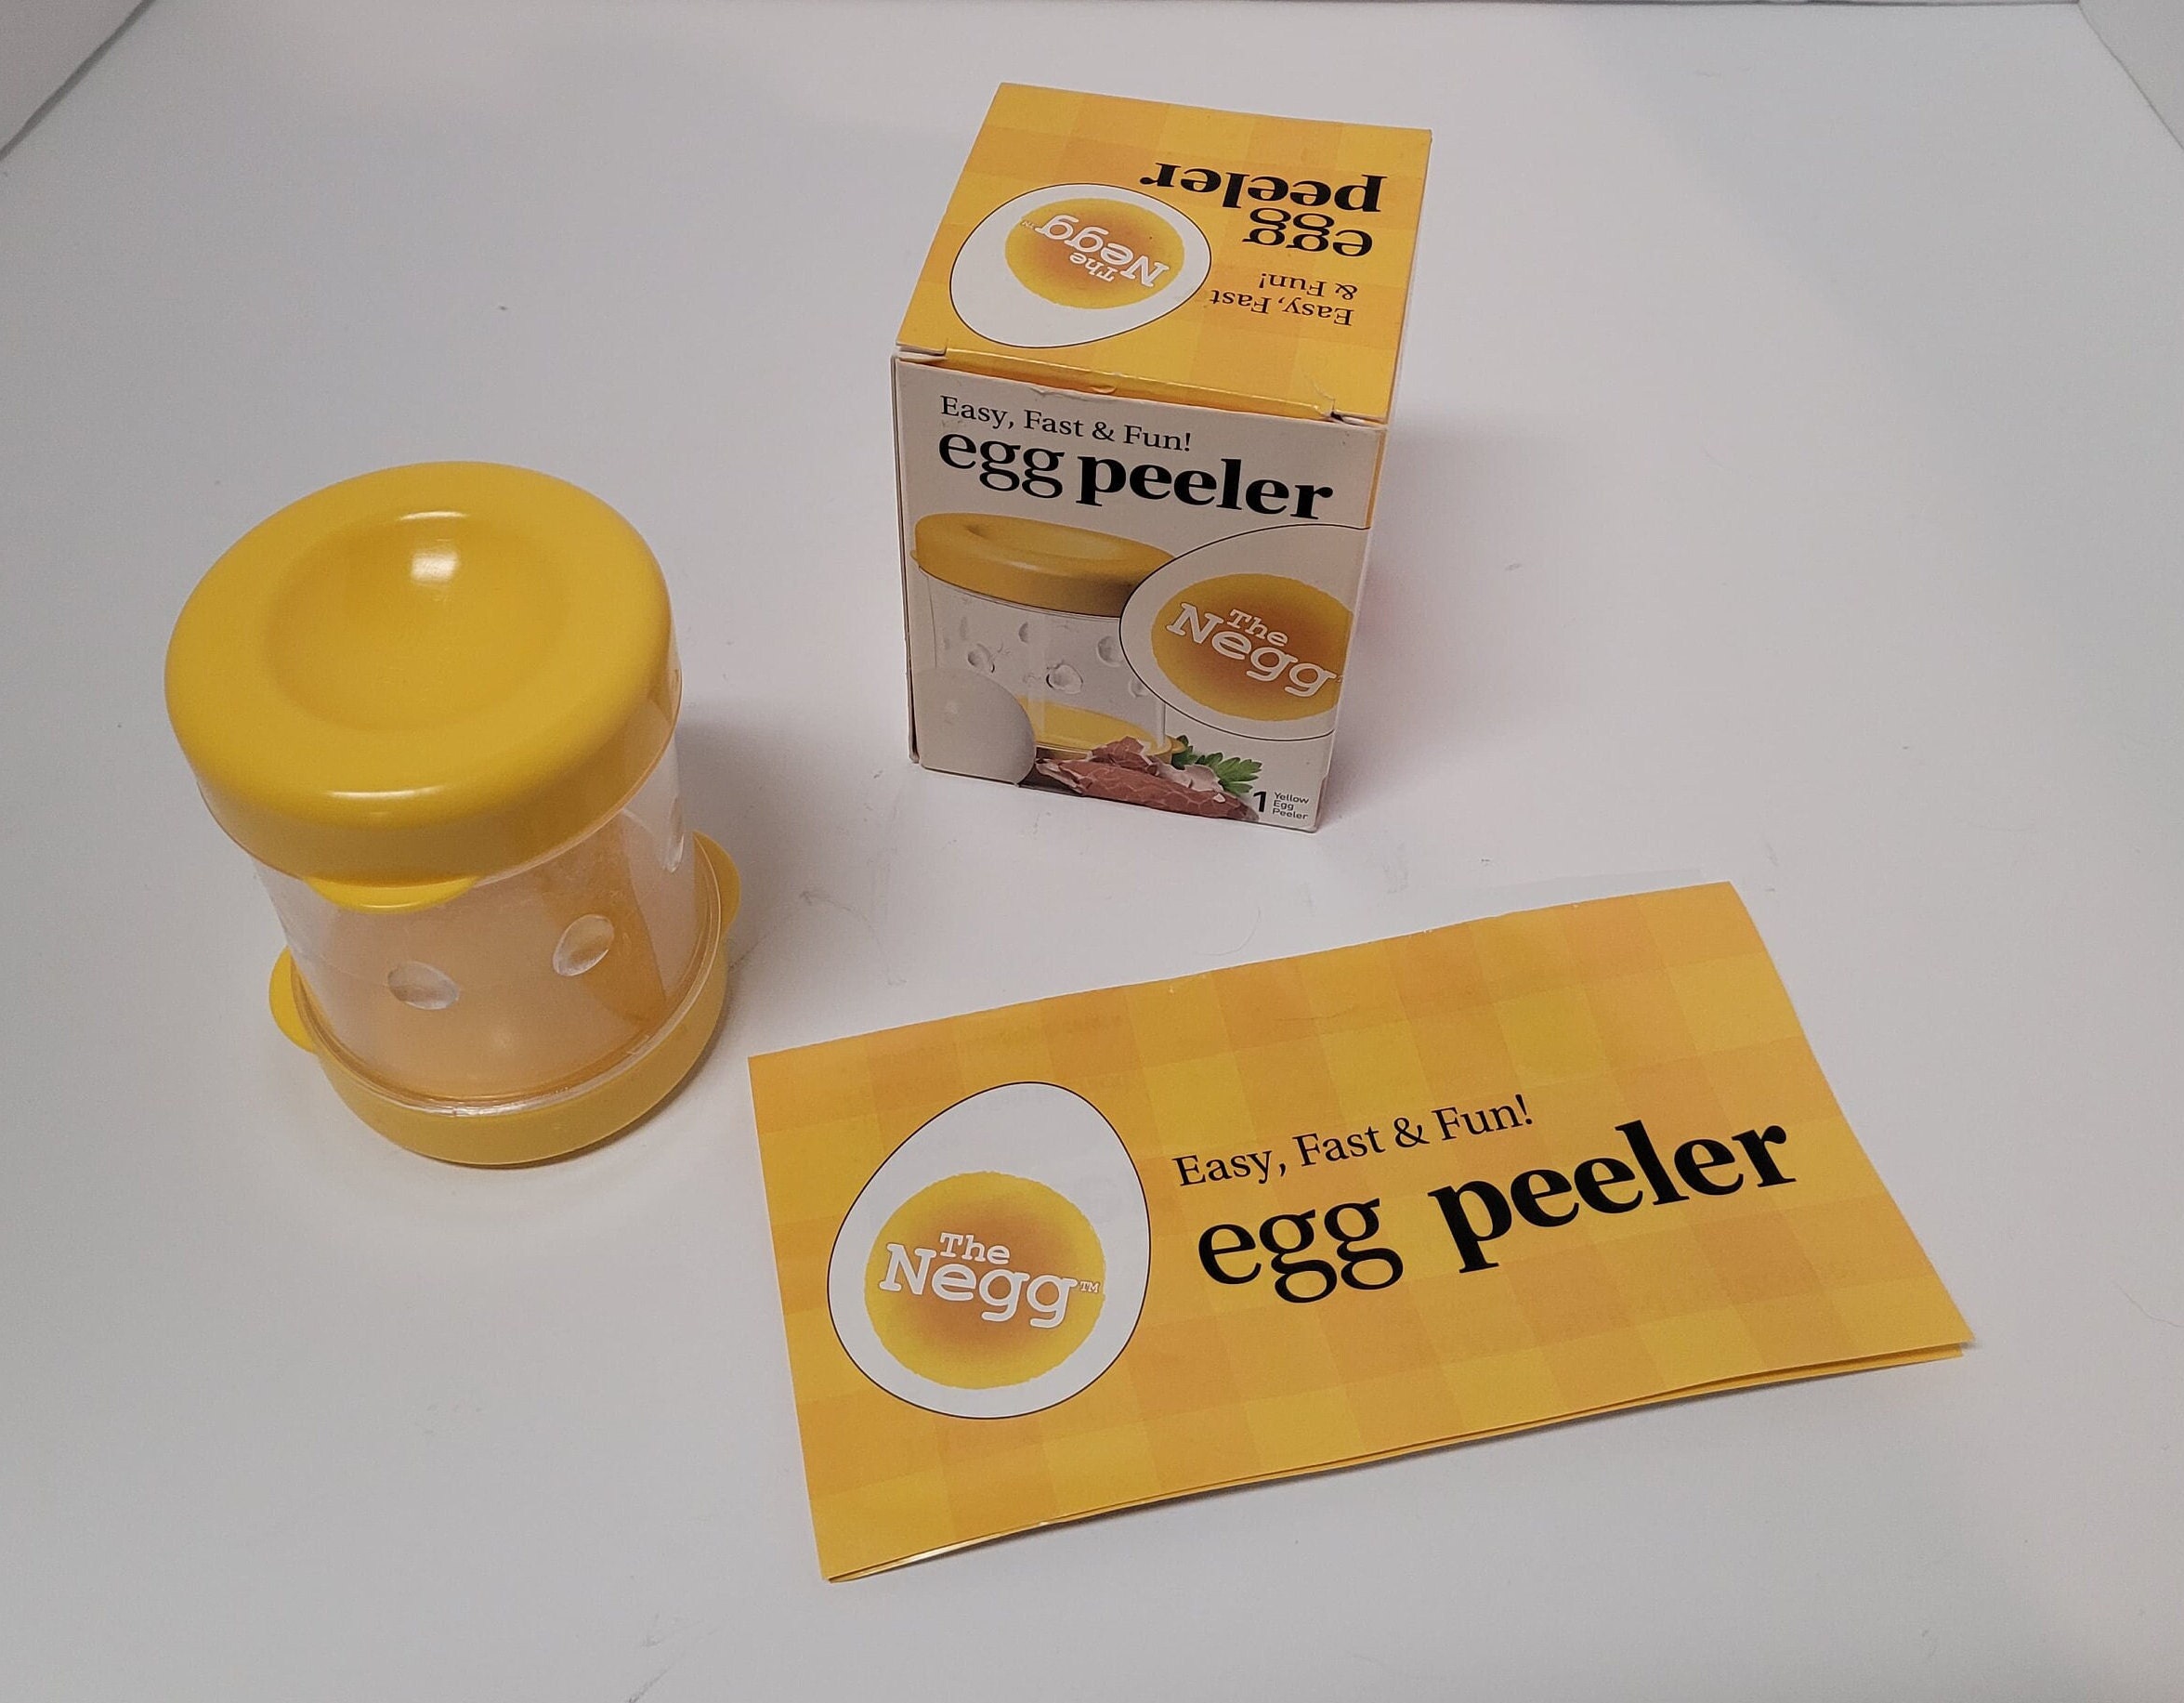 The Negg - Boiled Egg Peeler Yellow